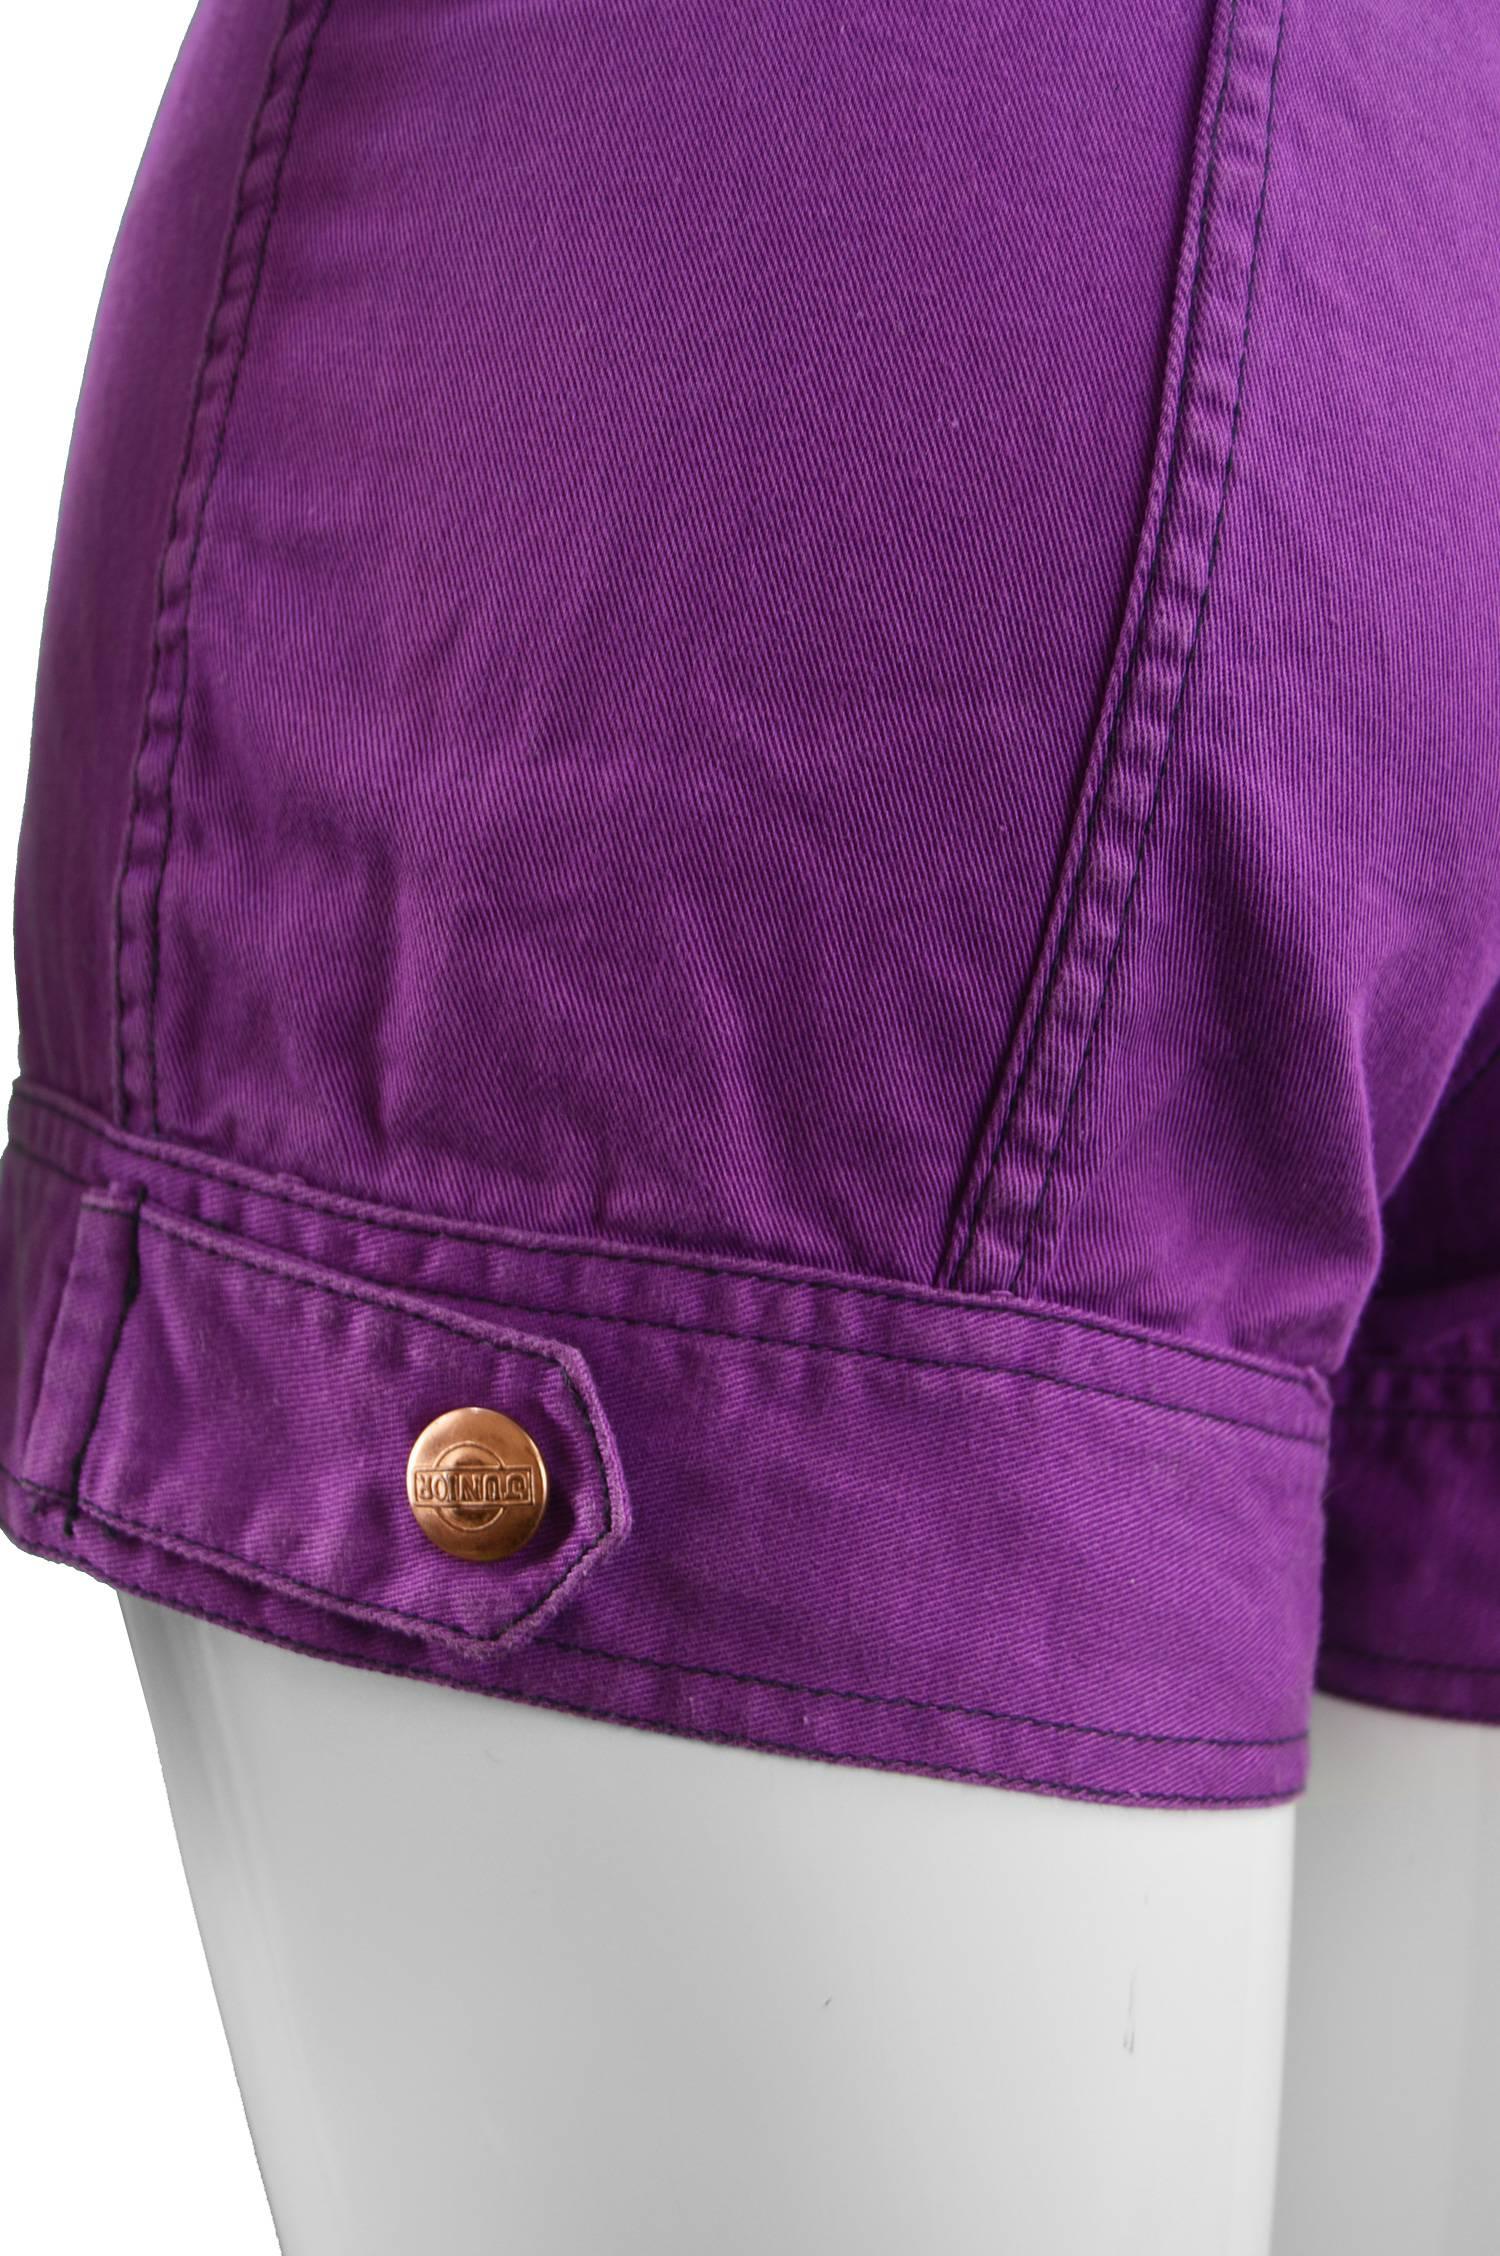 Jean Paul Gaultier Vintage Purple Cotton Twill Romper, 1990s 2